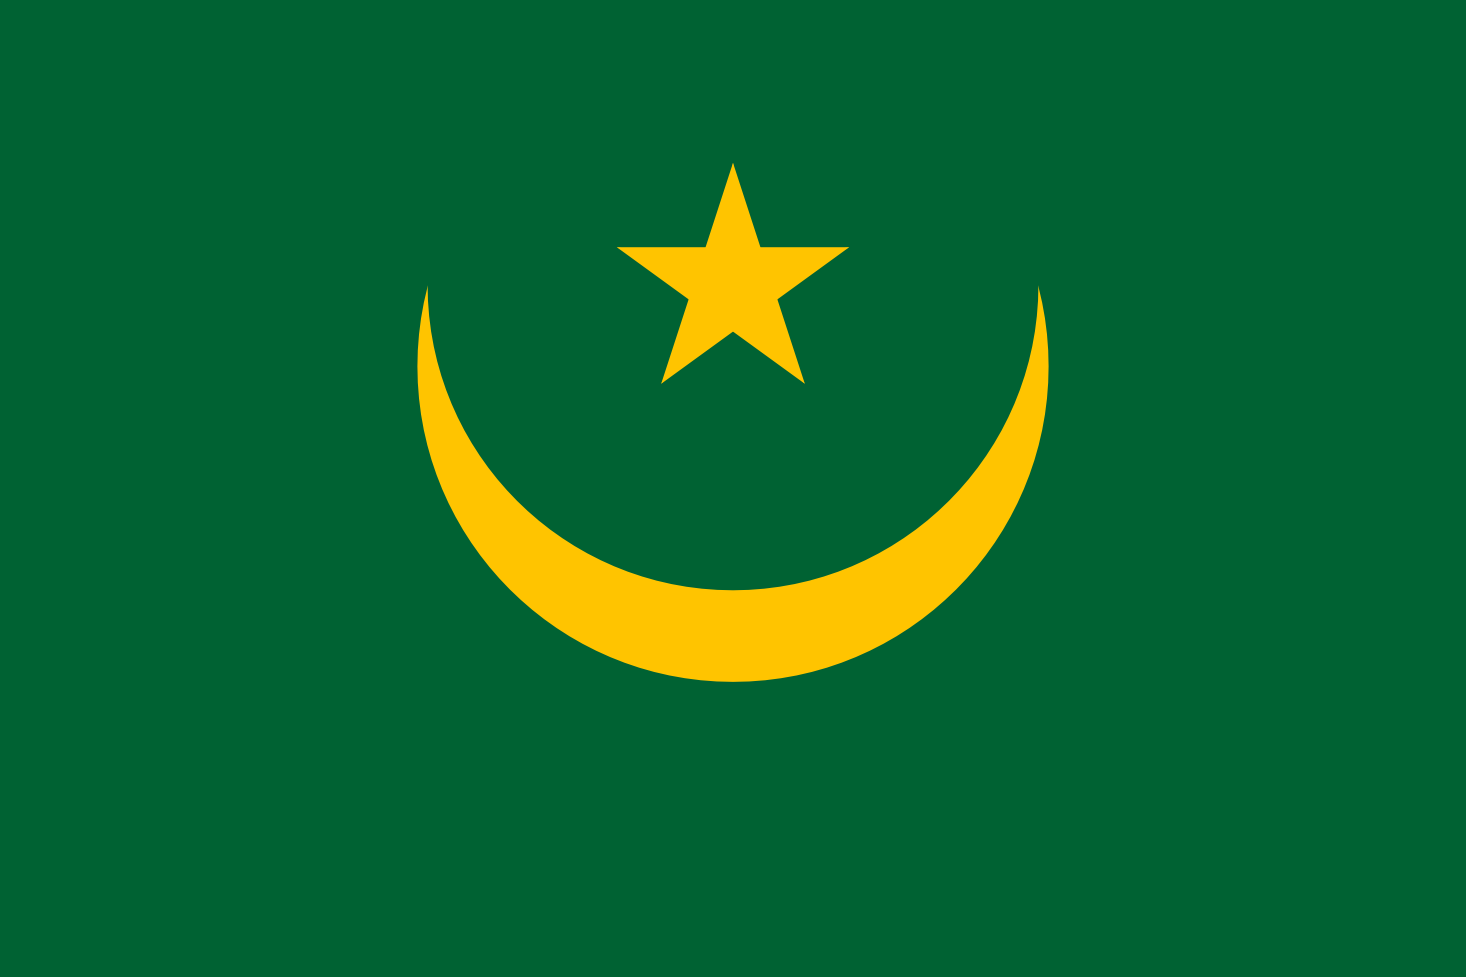 Imagem, bandeira do estado do estado da Mauritânia - na resolucao de 1466x977 - África